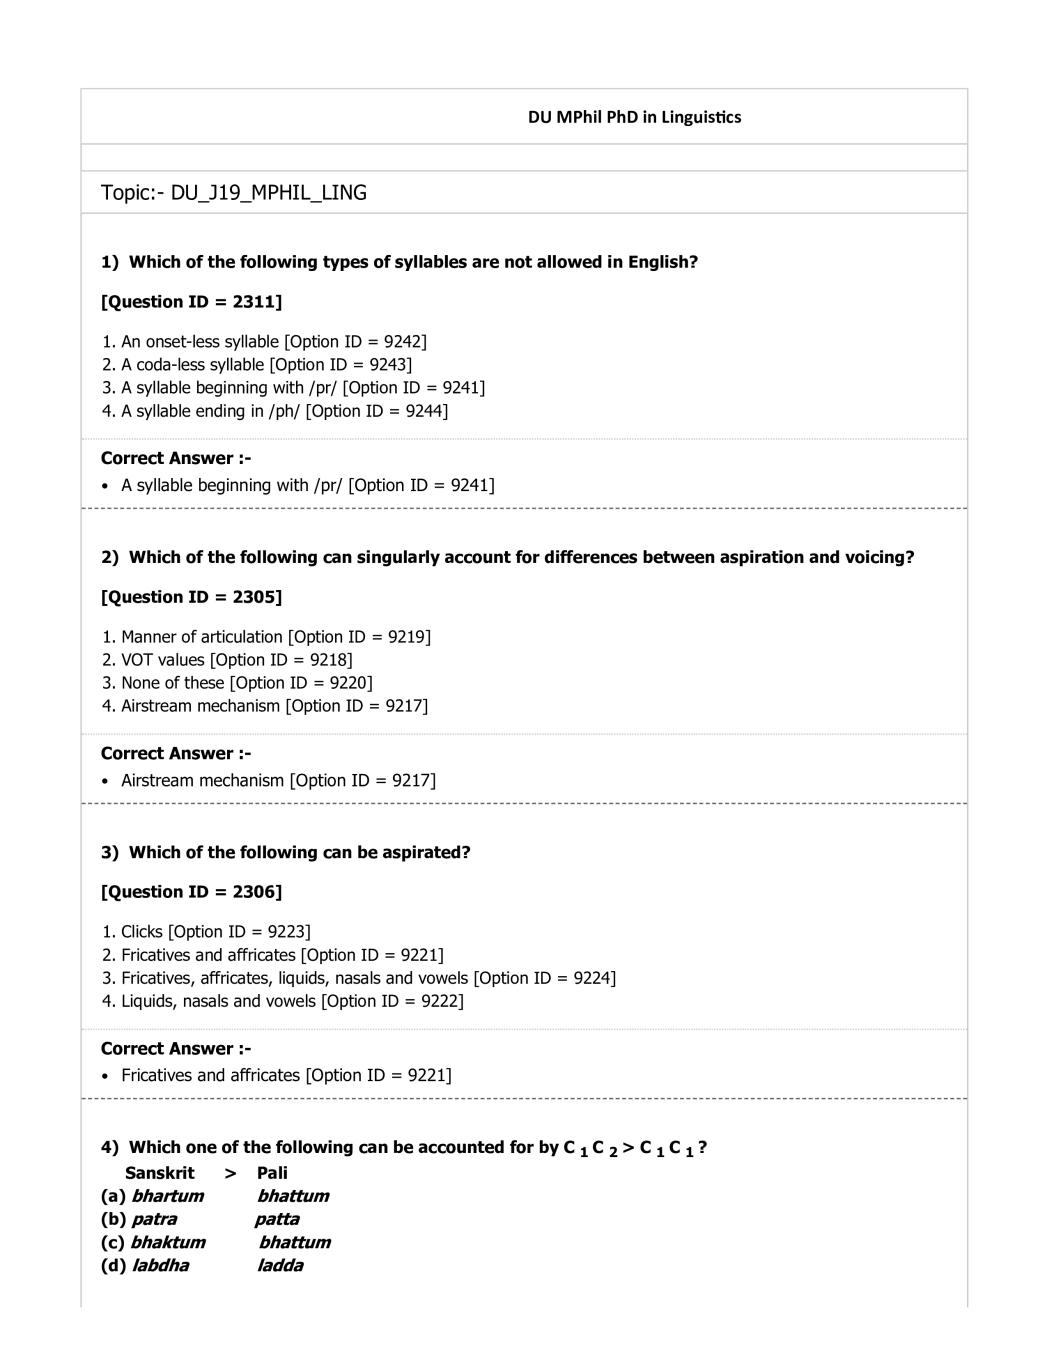 DUET Question Paper 2019 for M.Phil Ph.D Linguistics - Page 1